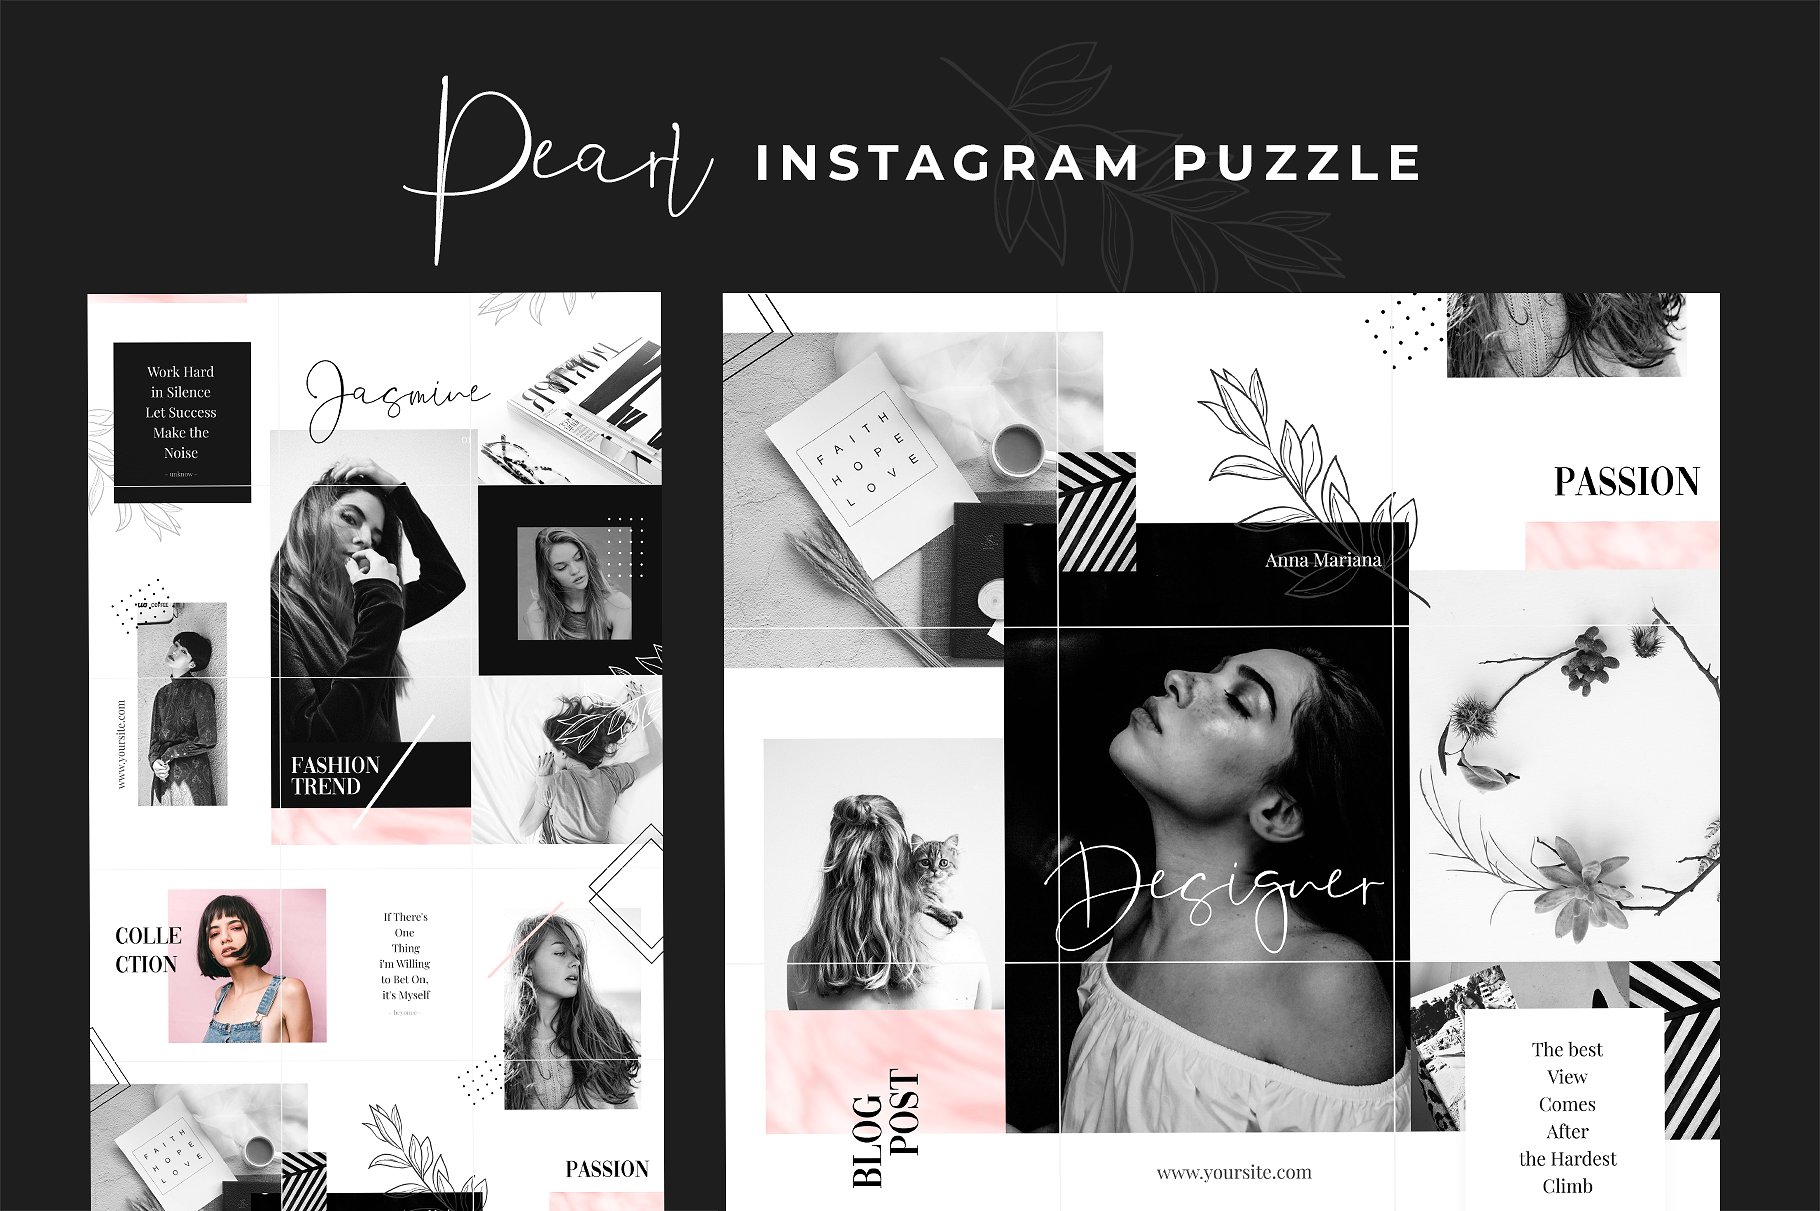 现代黑色主题的instagram社交媒体模板第一素材精选 Instagram Puzzle – Pearl [psd]插图